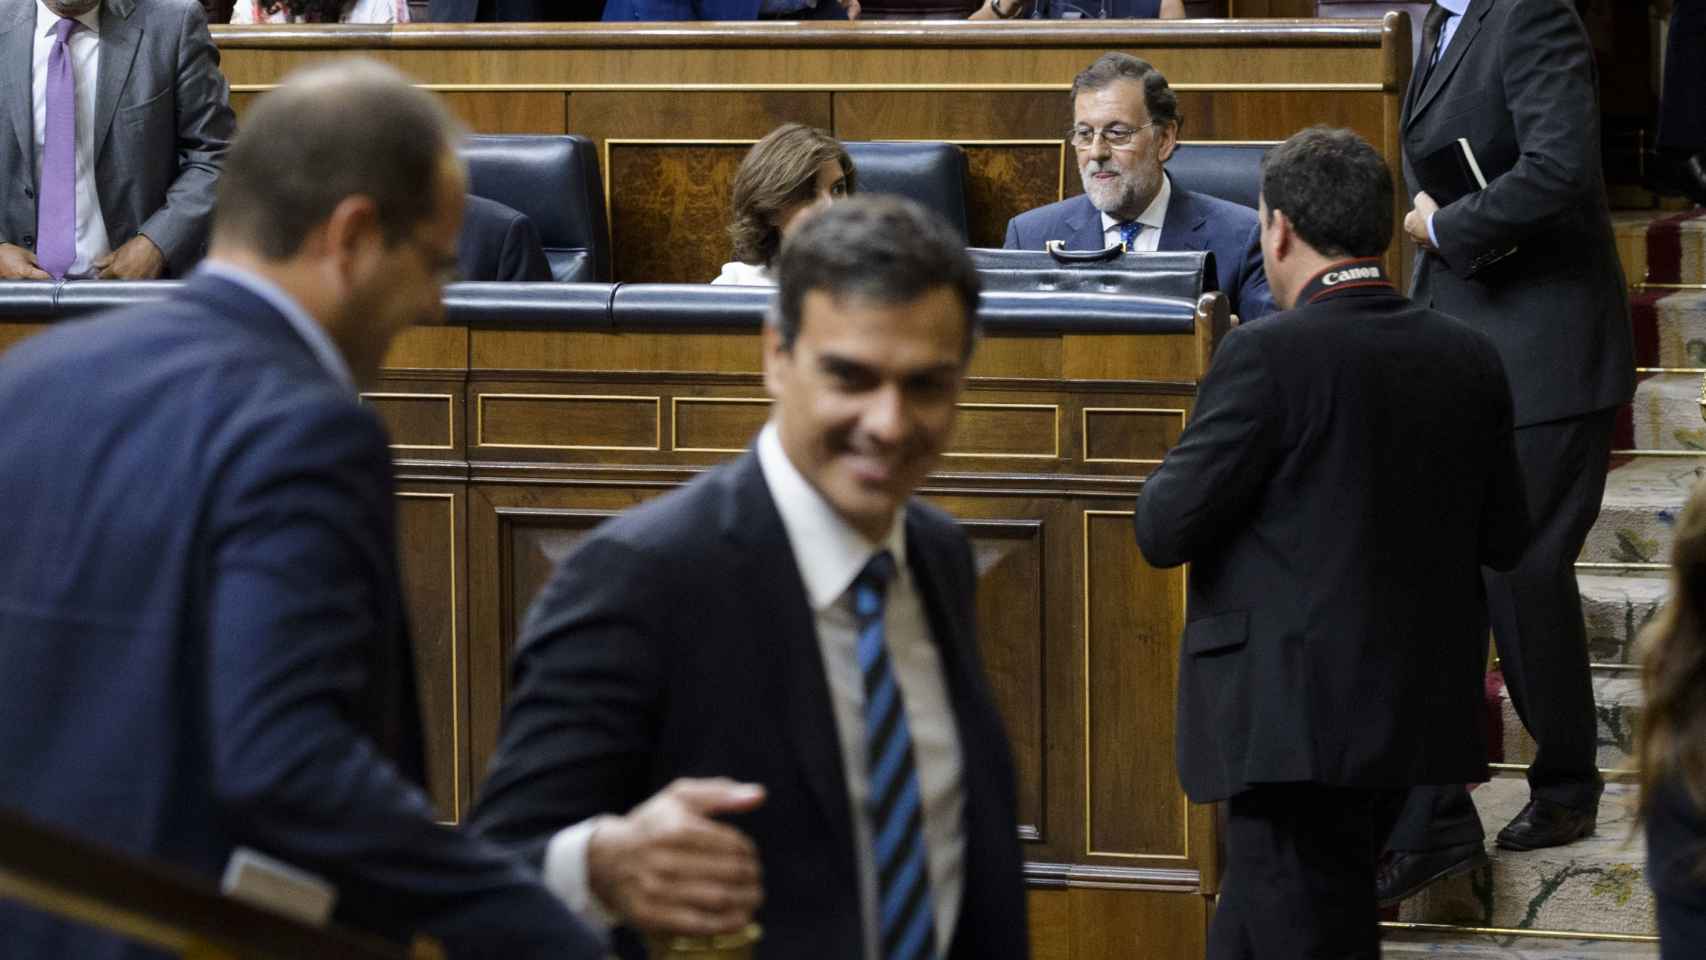 Pedro Sánchez y César Luena abandonan el hemiciclo tras el discurso de Rajoy.